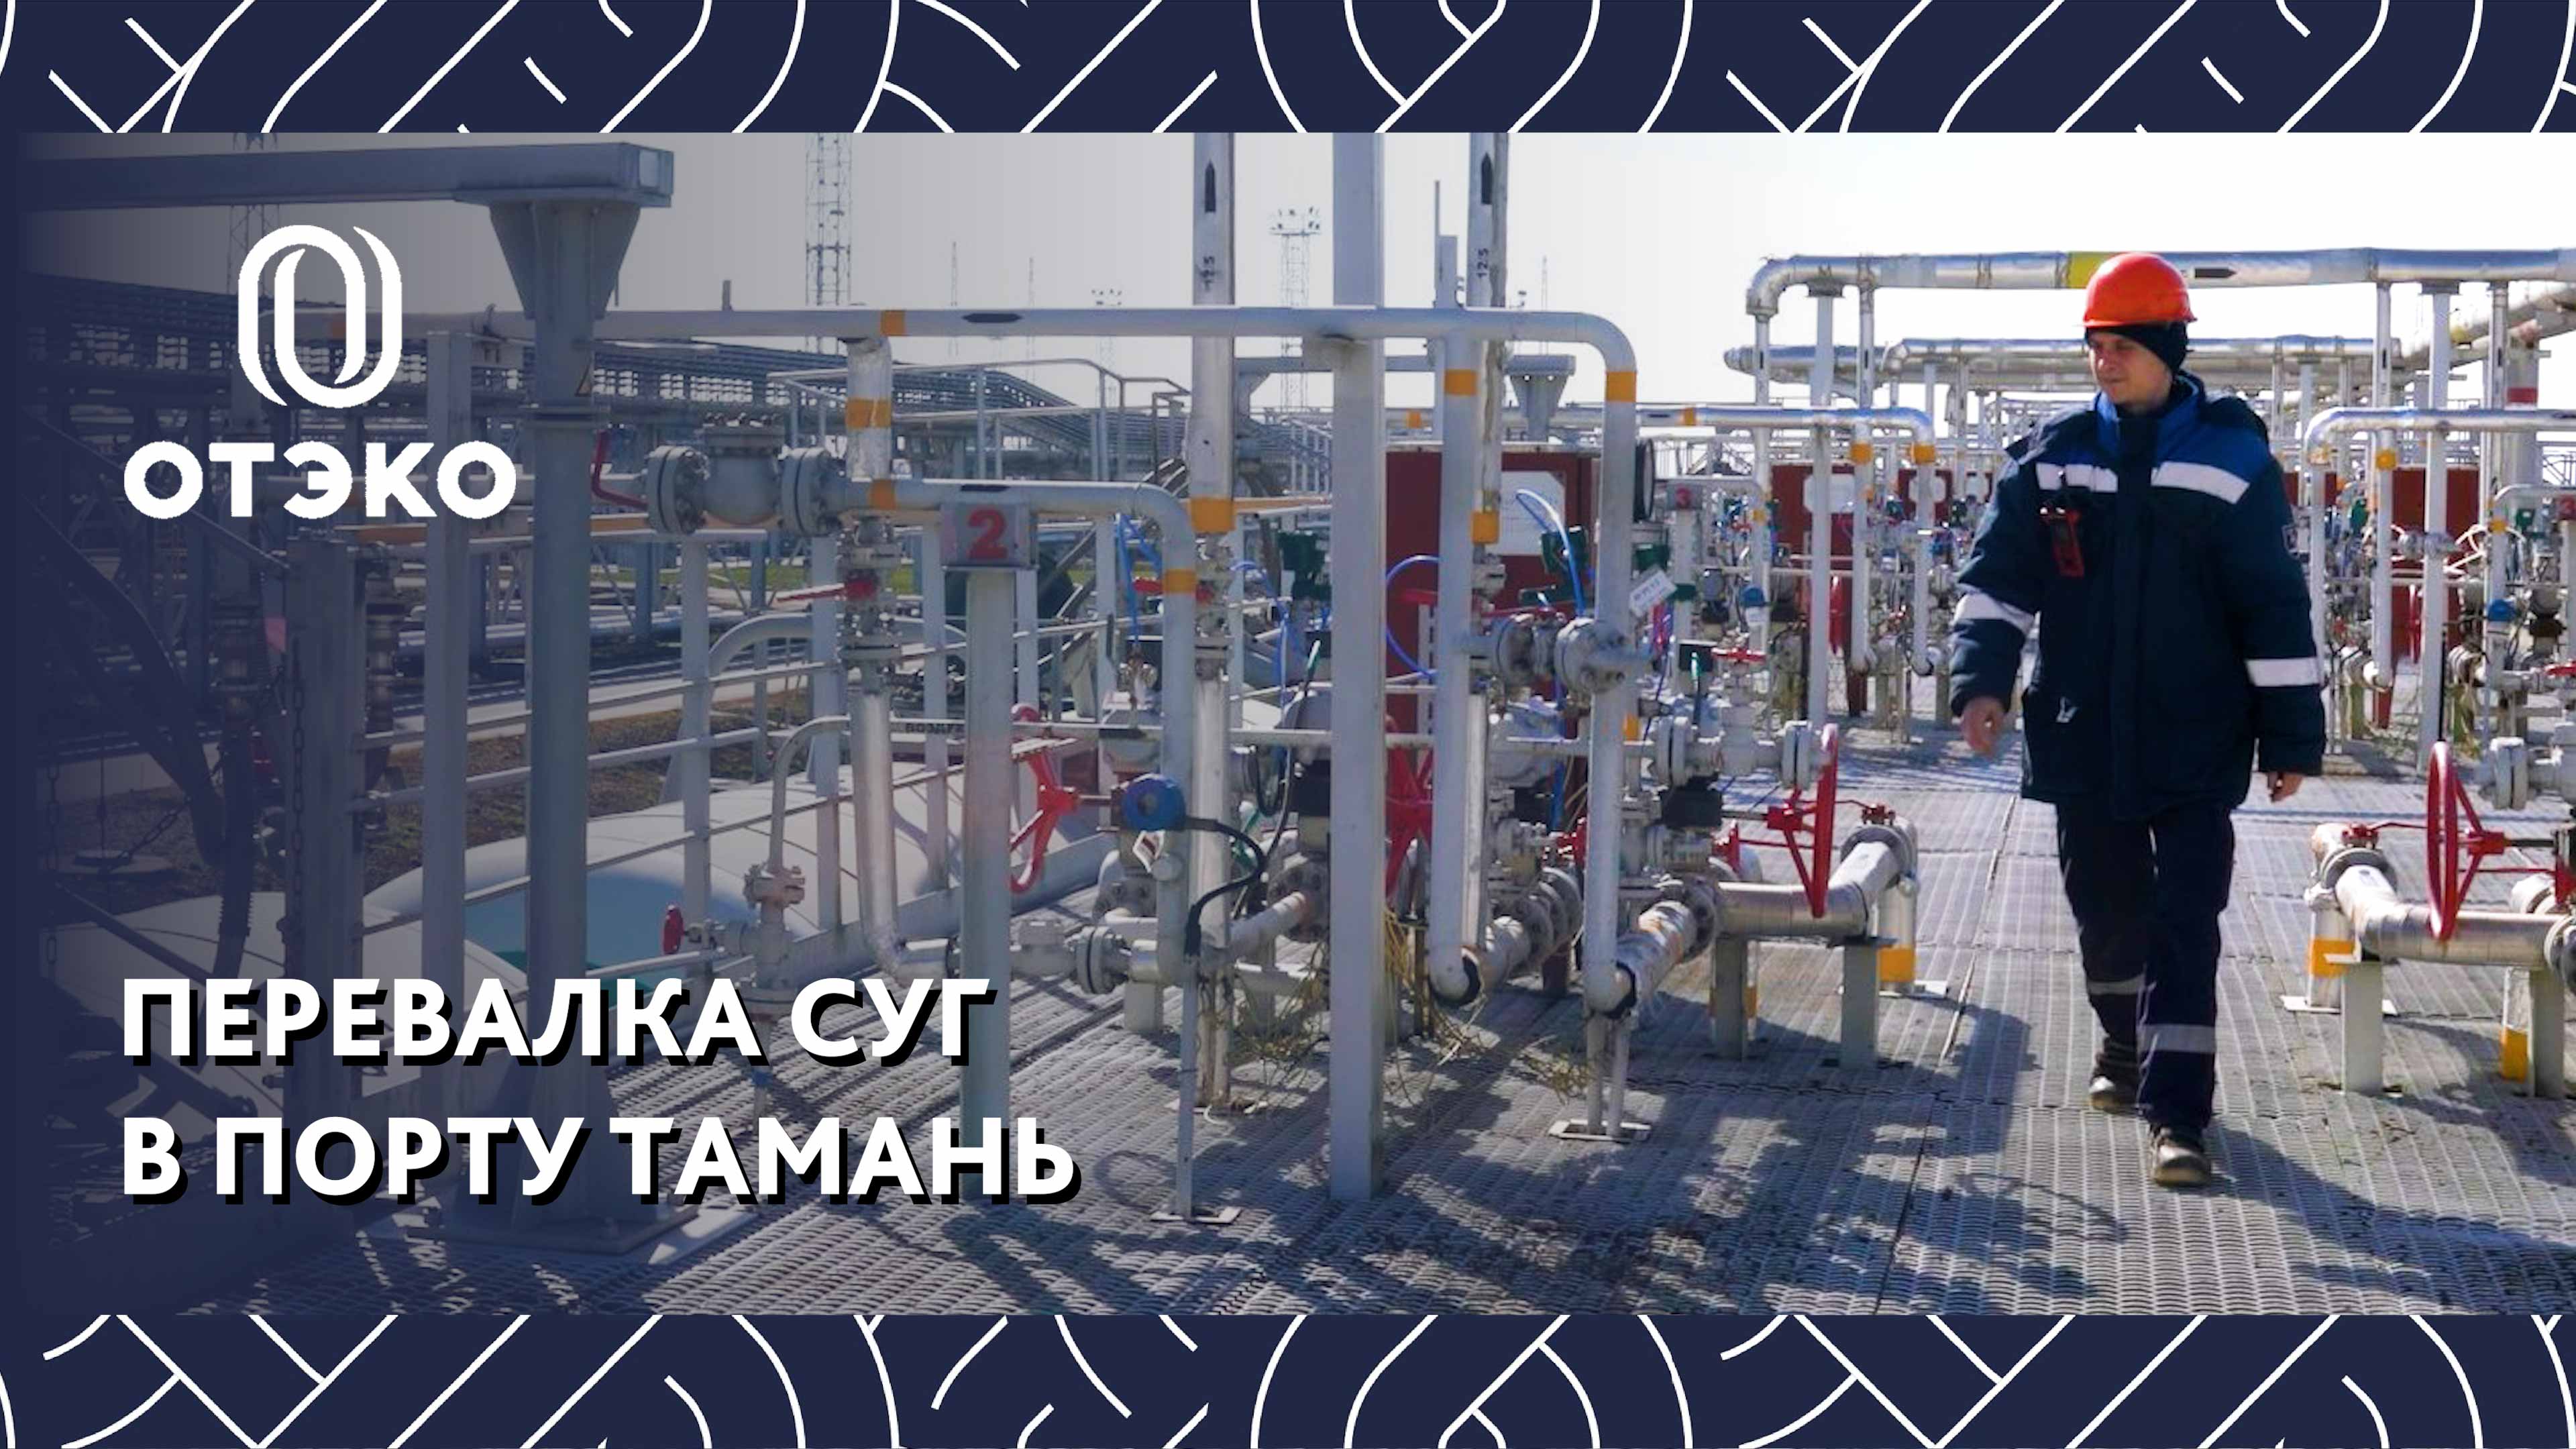 Хранение и перевалка сжиженных углеводородных газов: как это происходит в порту Тамань